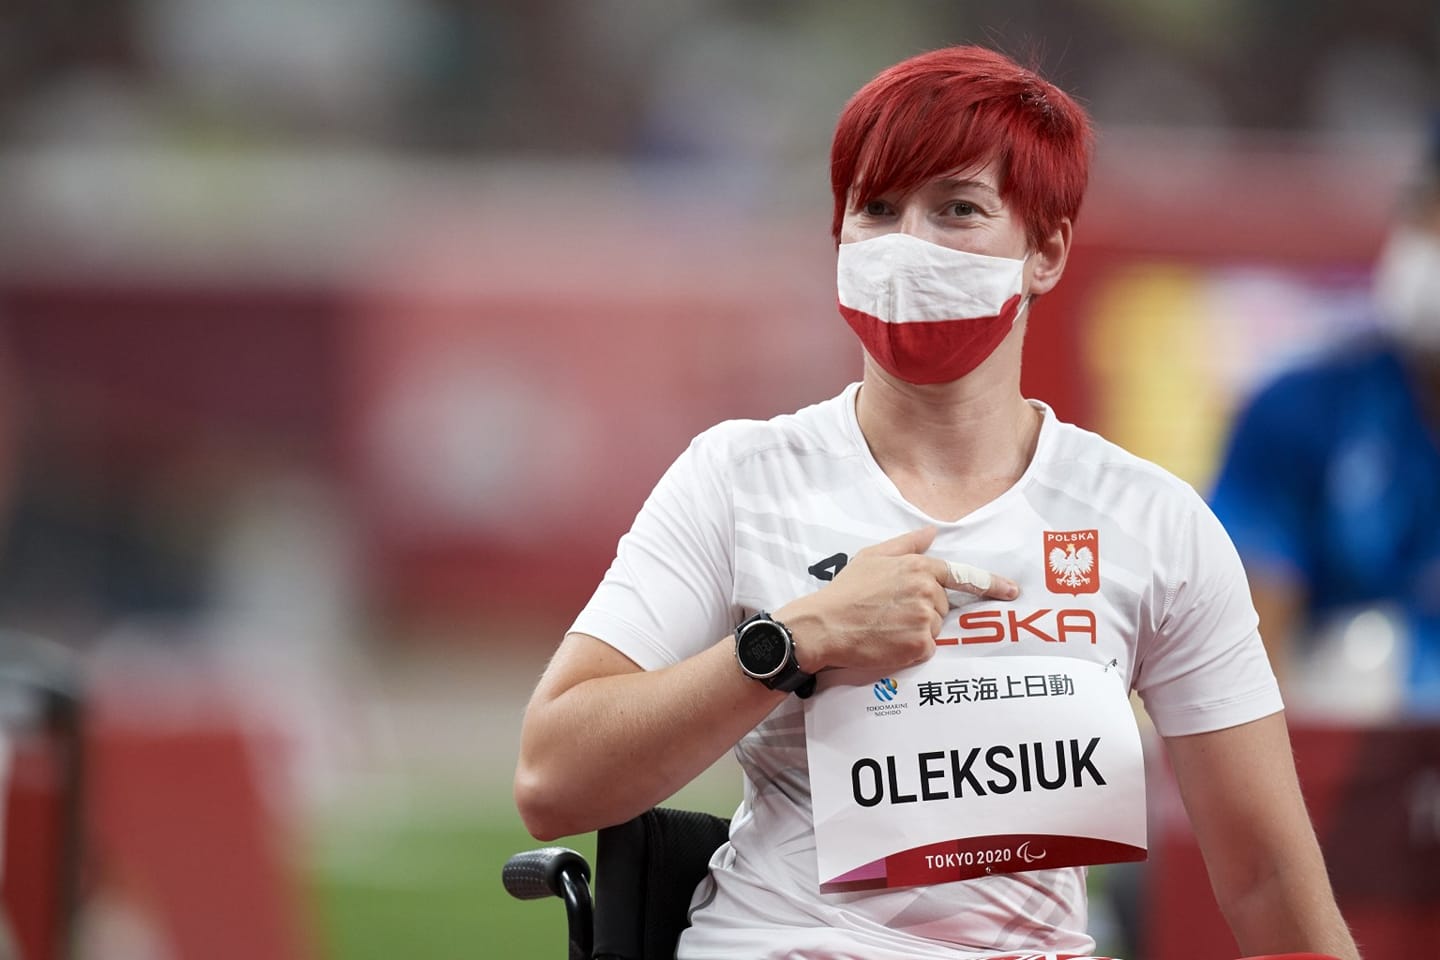 Debiut Joanny Oleksiuk na Igrzyskach Paraolimpijskich